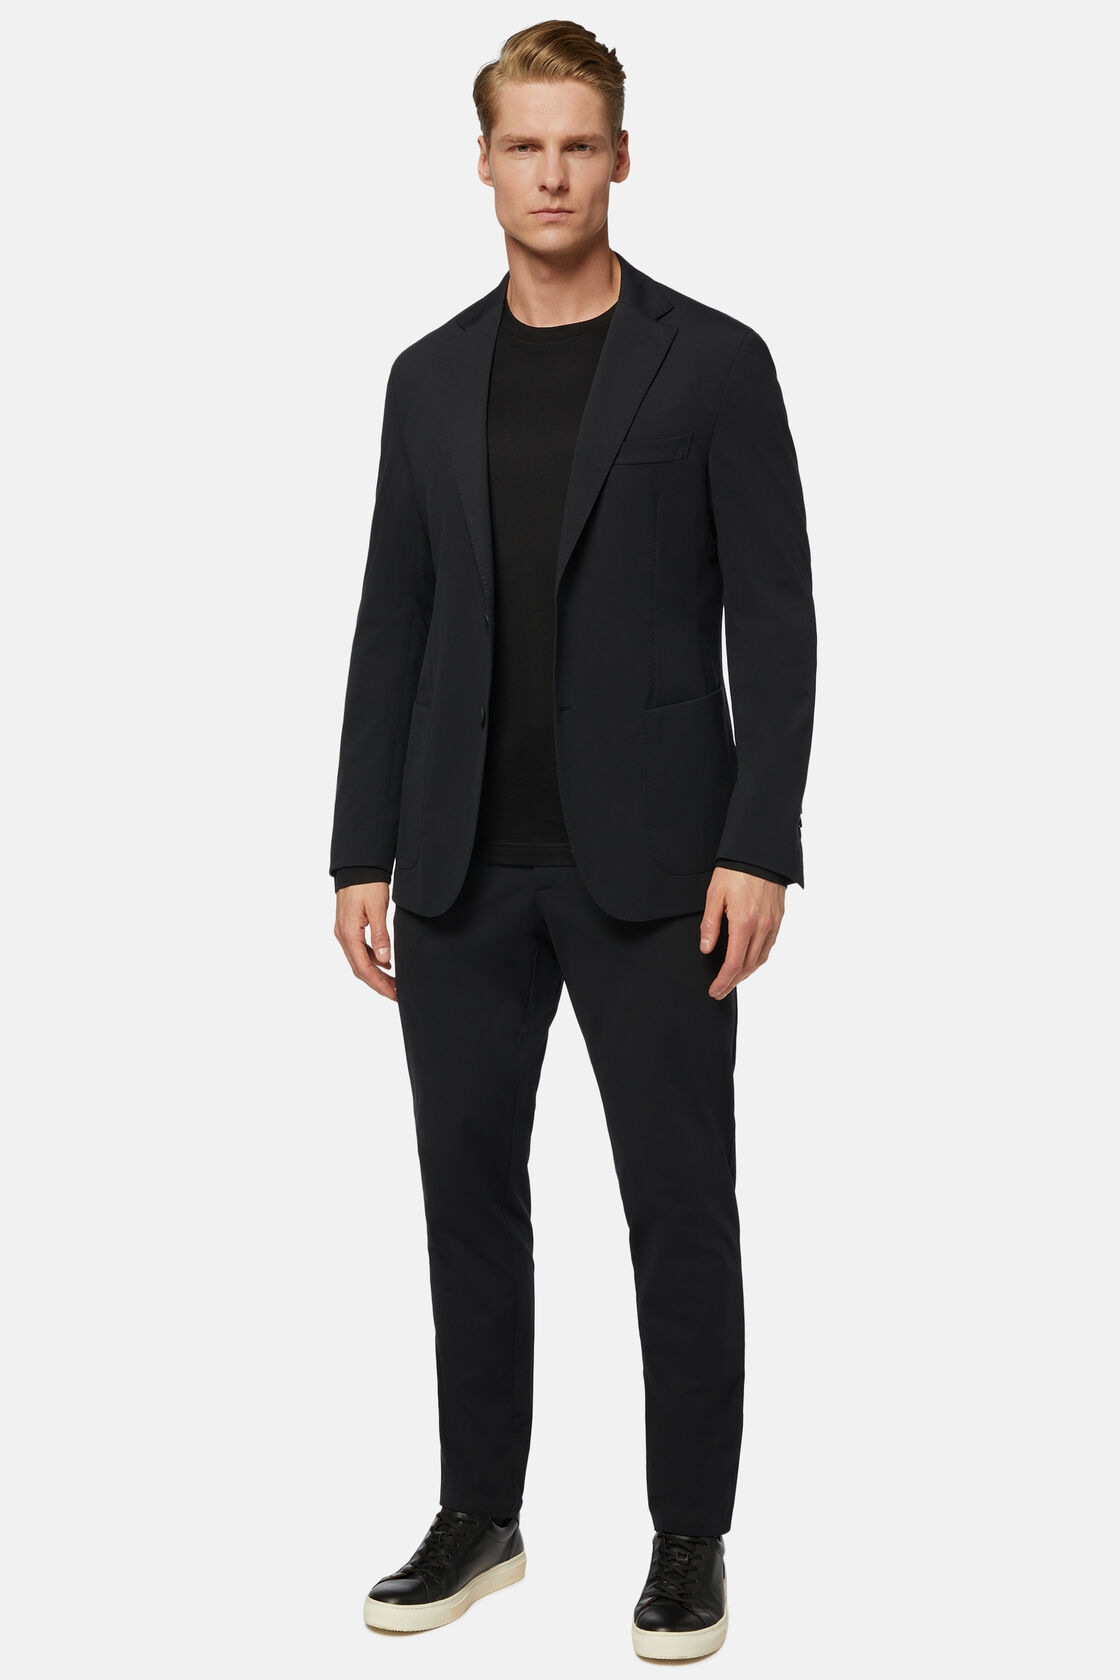 Solid Black B Tech Suit, , hi-res